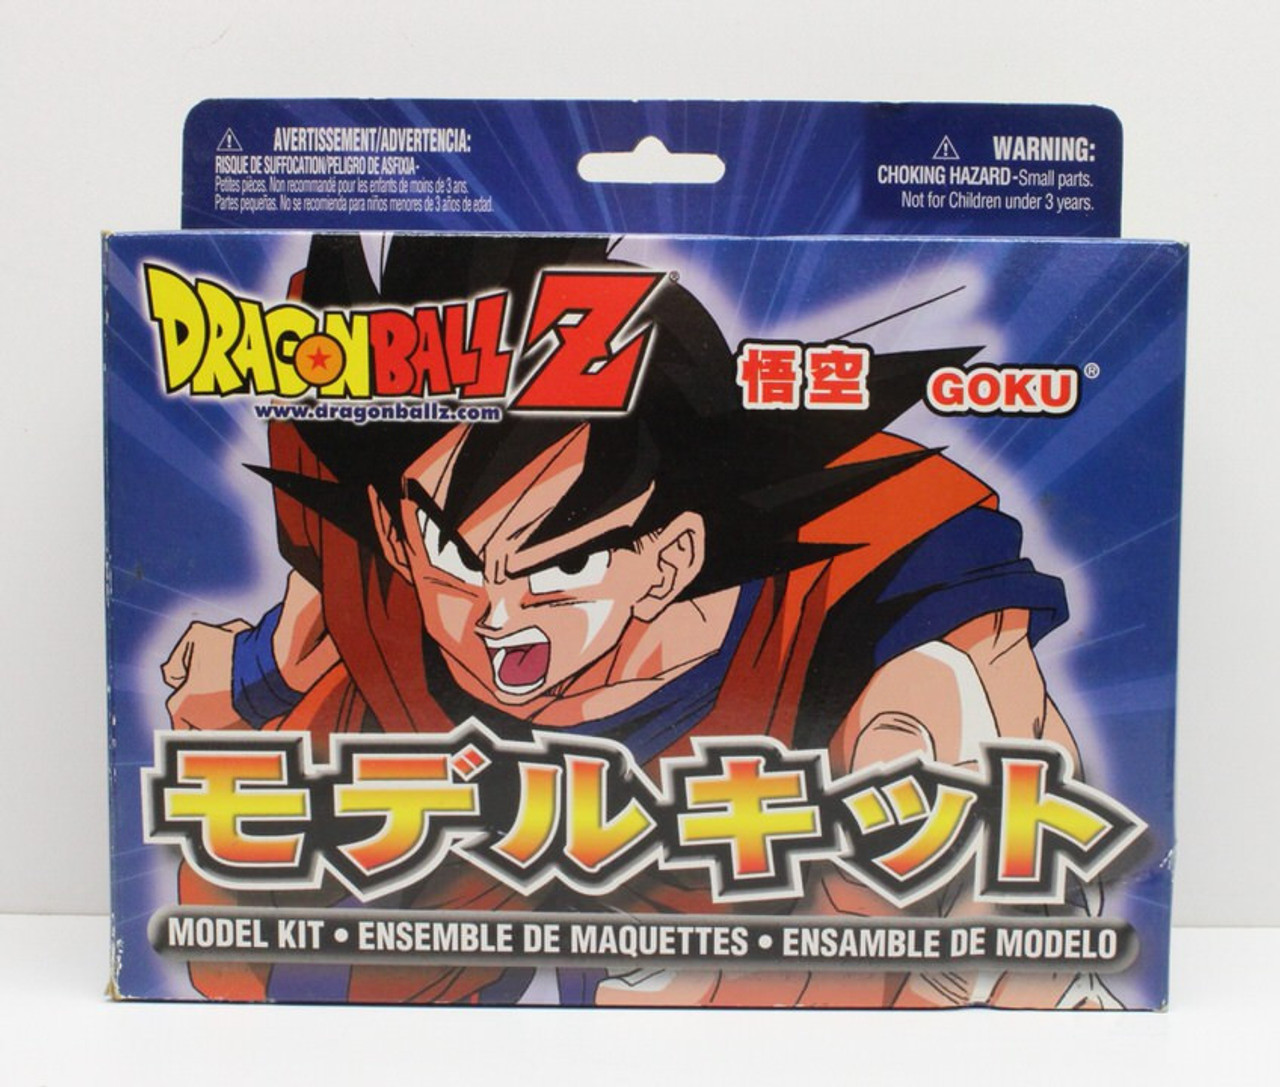 Kit Goku Dragonball Z completo